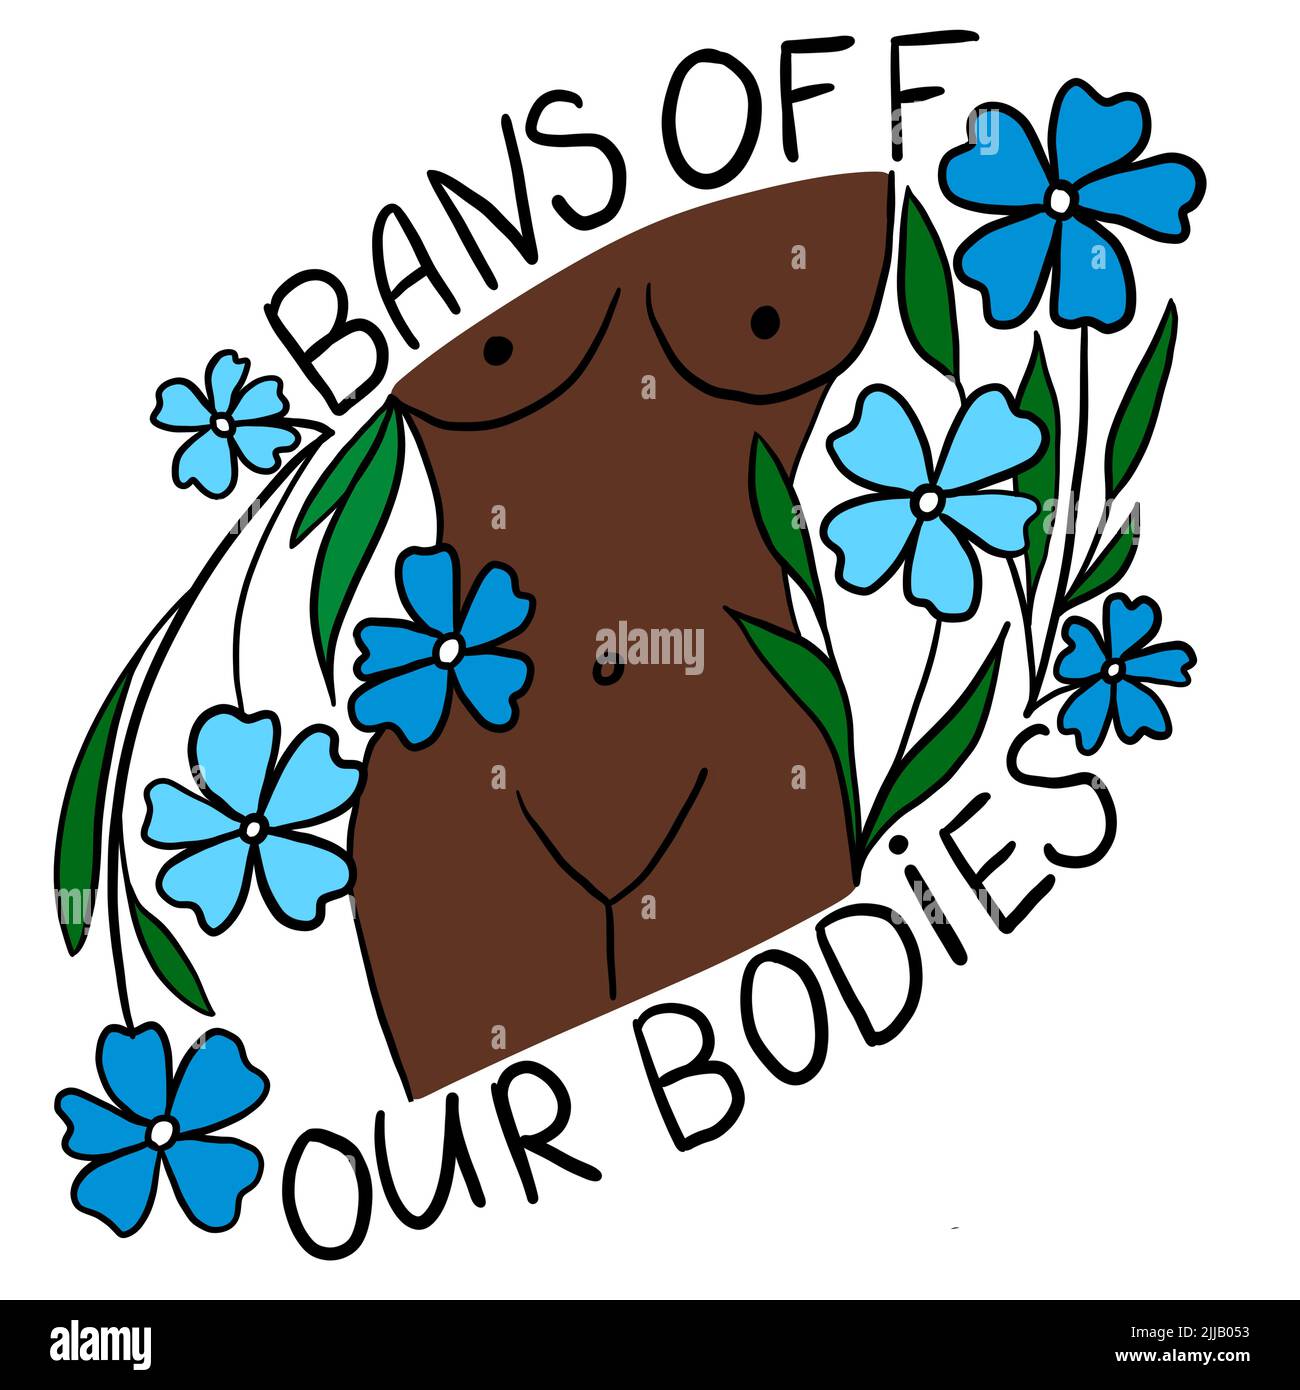 Prohibiciones de nuestros cuerpos mano dibujado ilustración con la mujer afroamericana negro marrón cuerpo. Concepto de activismo feminista, derechos reproductivos al aborto, diseño de fila v uada Foto de stock